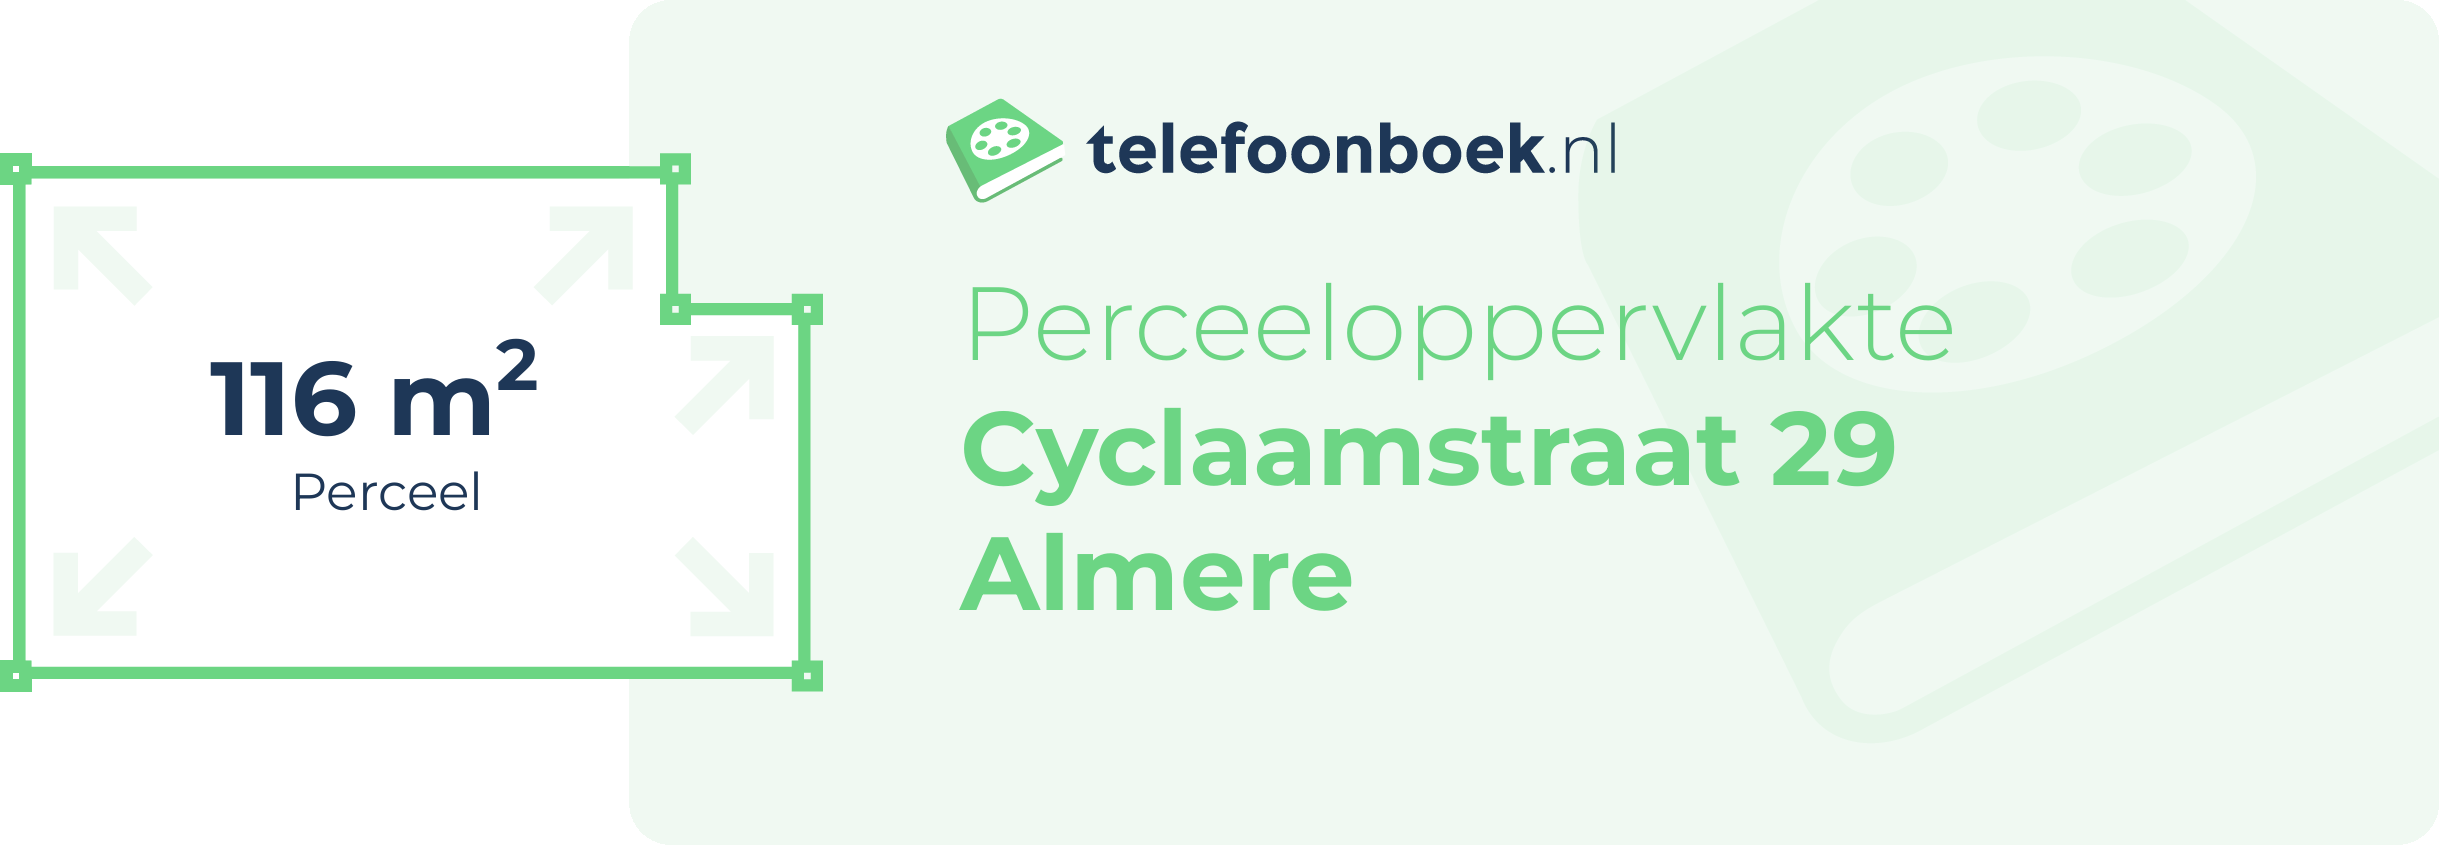 Perceeloppervlakte Cyclaamstraat 29 Almere